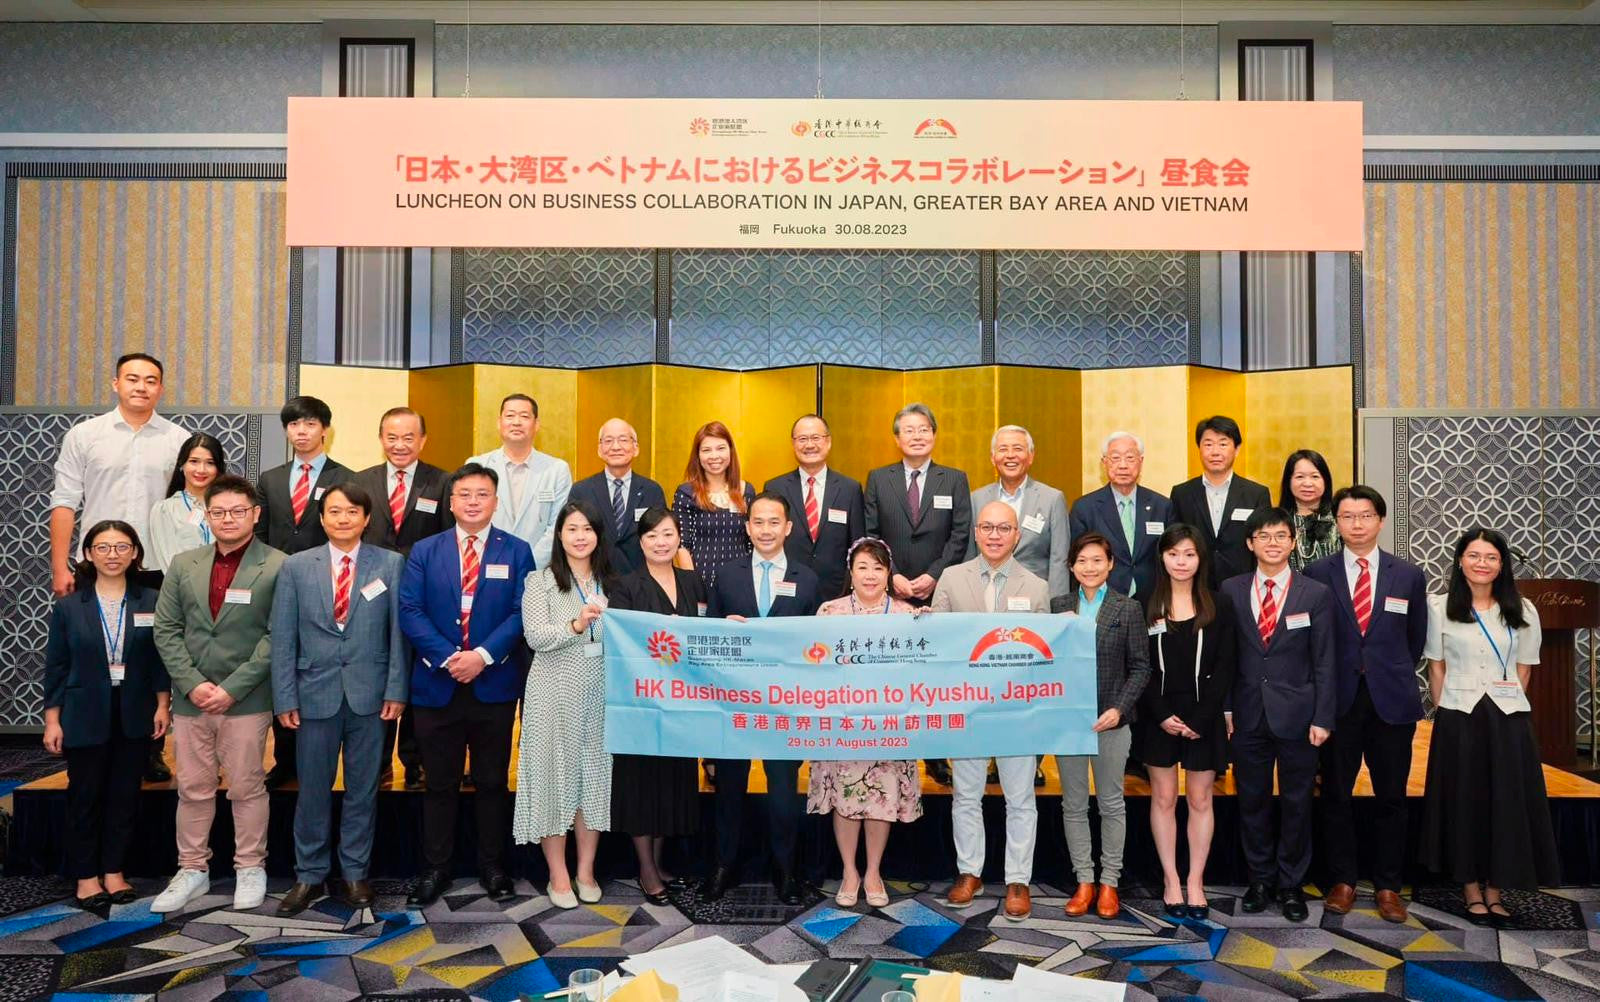 زعيم التجارة الإلكترونية في هونغ كونغ يعزز العلاقات الإقليمية خلال زيارة كيوشو التاريخية